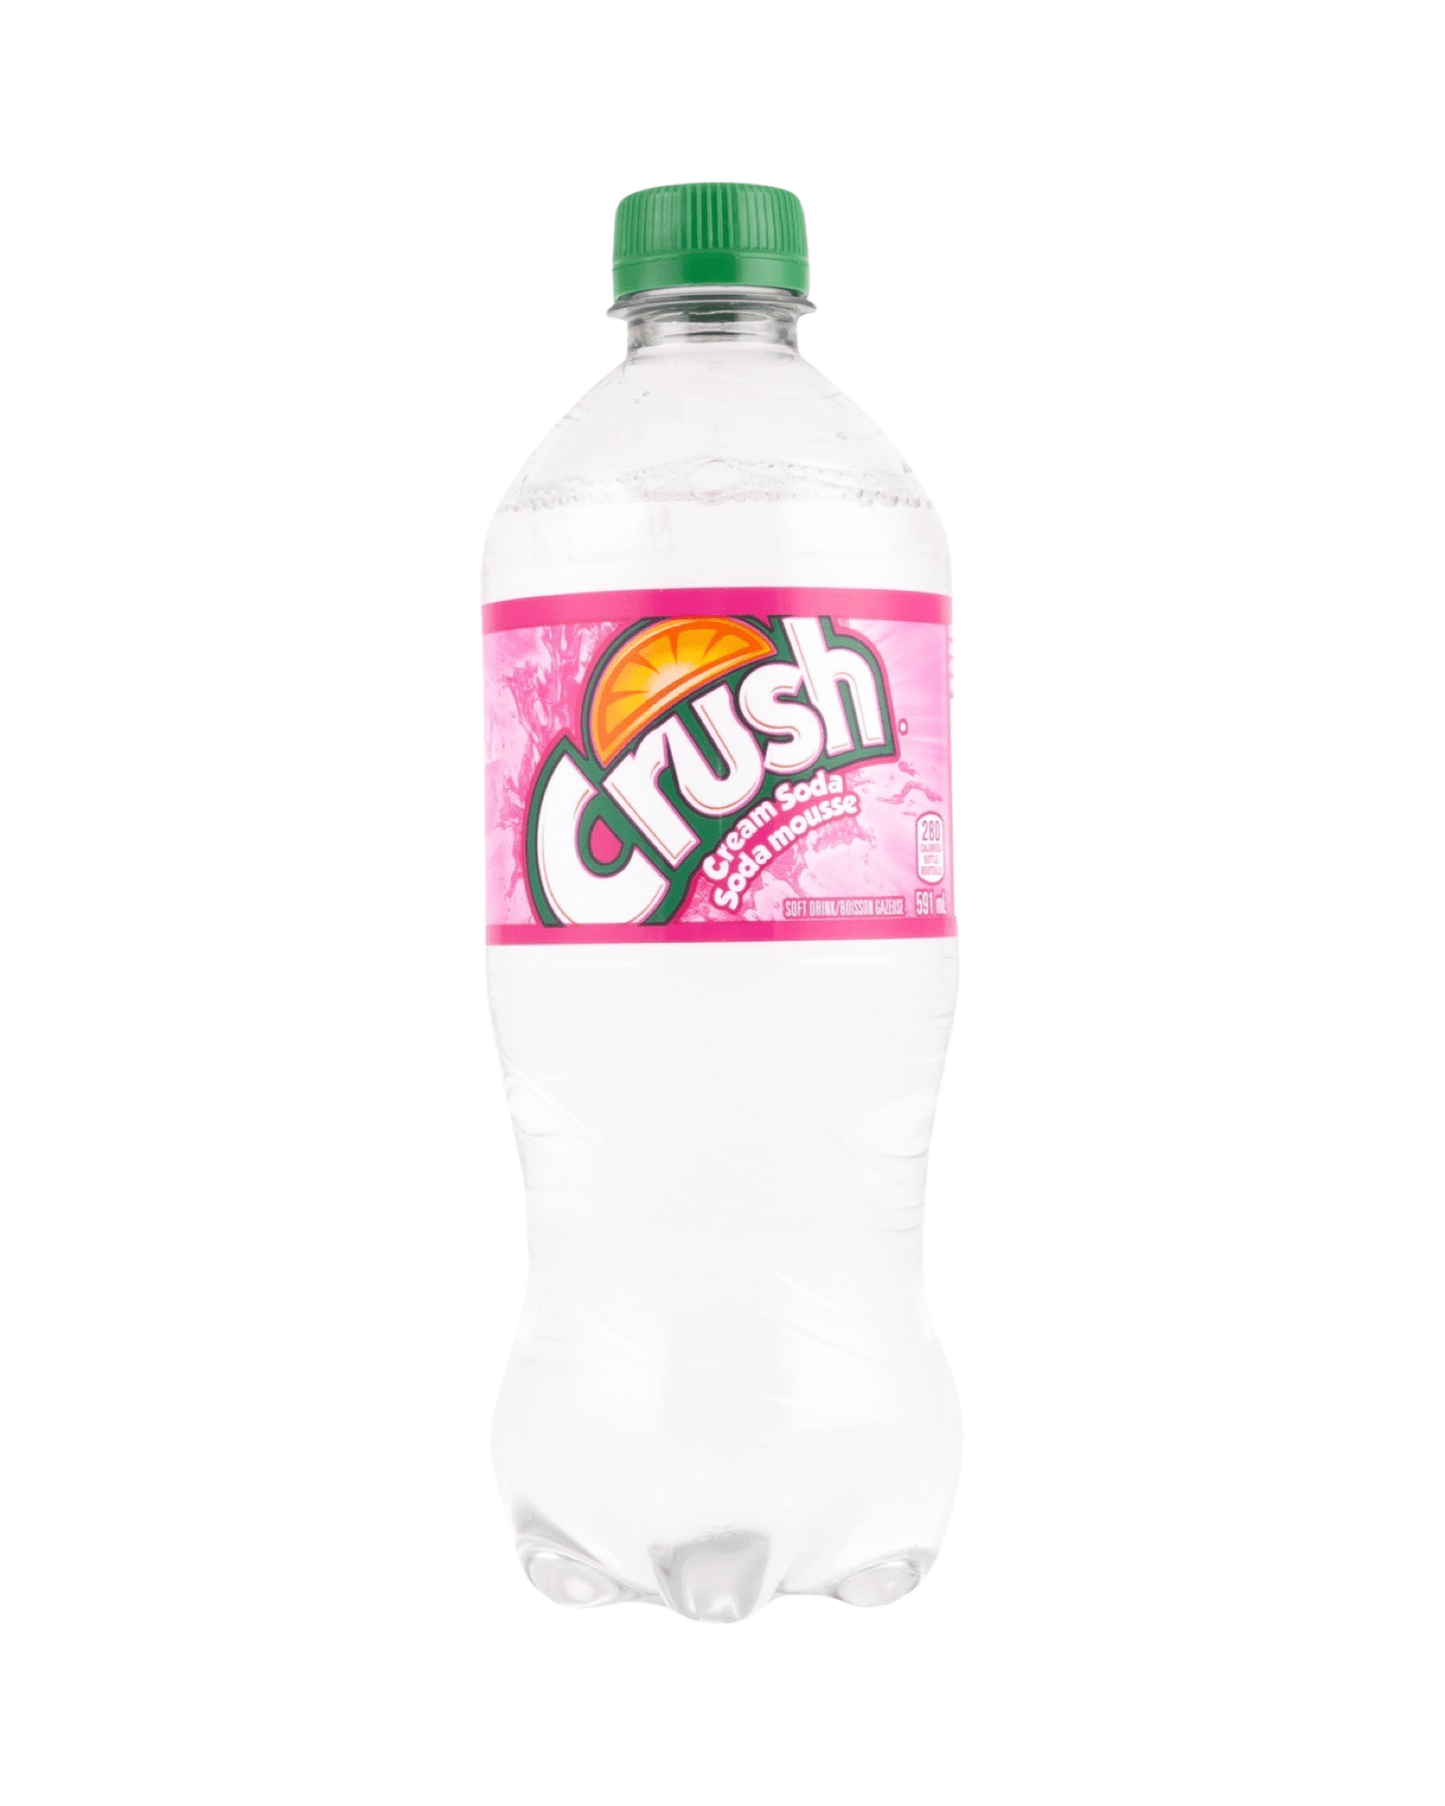 Crush Cream Soda (Canada) - Exotic Soda Company